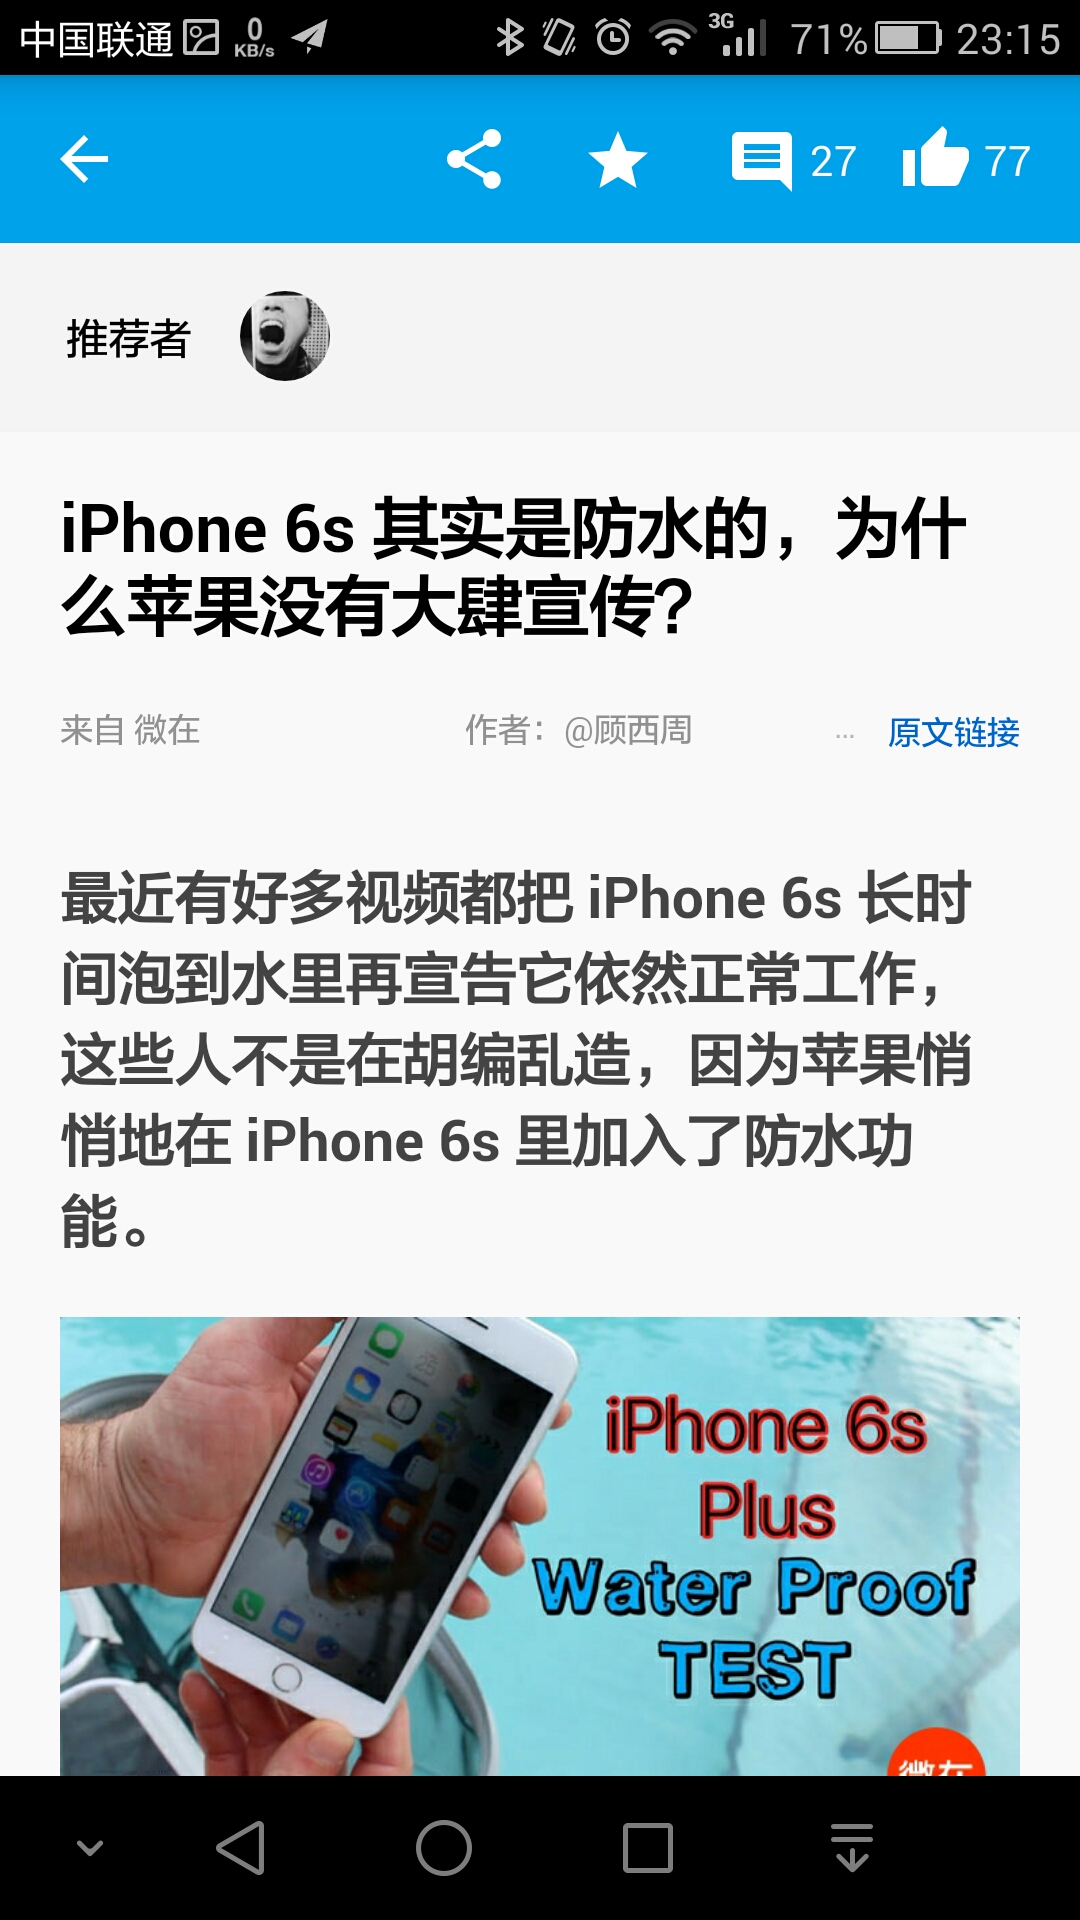 手机 Iphone 6s 其实是防水的 苹果没有大肆宣传nga玩家社区